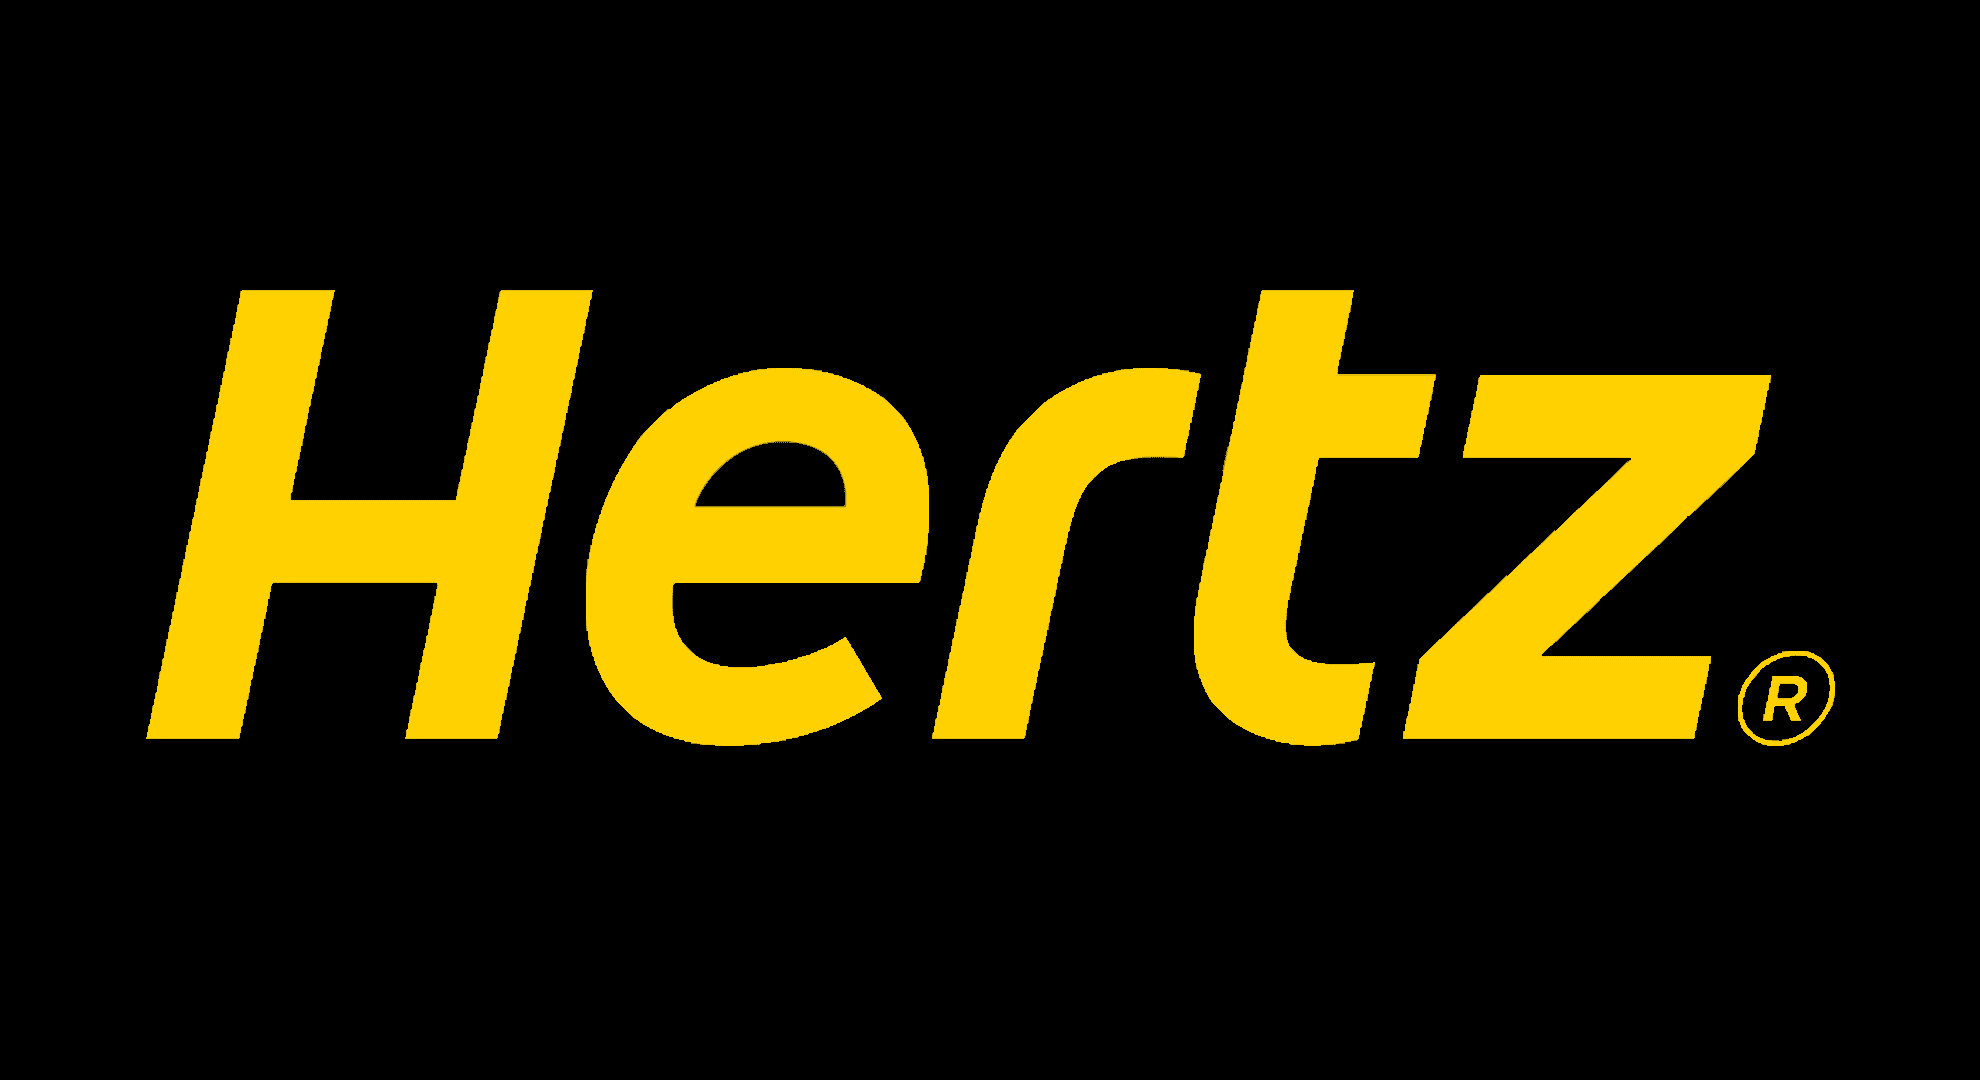 Logo Hertz